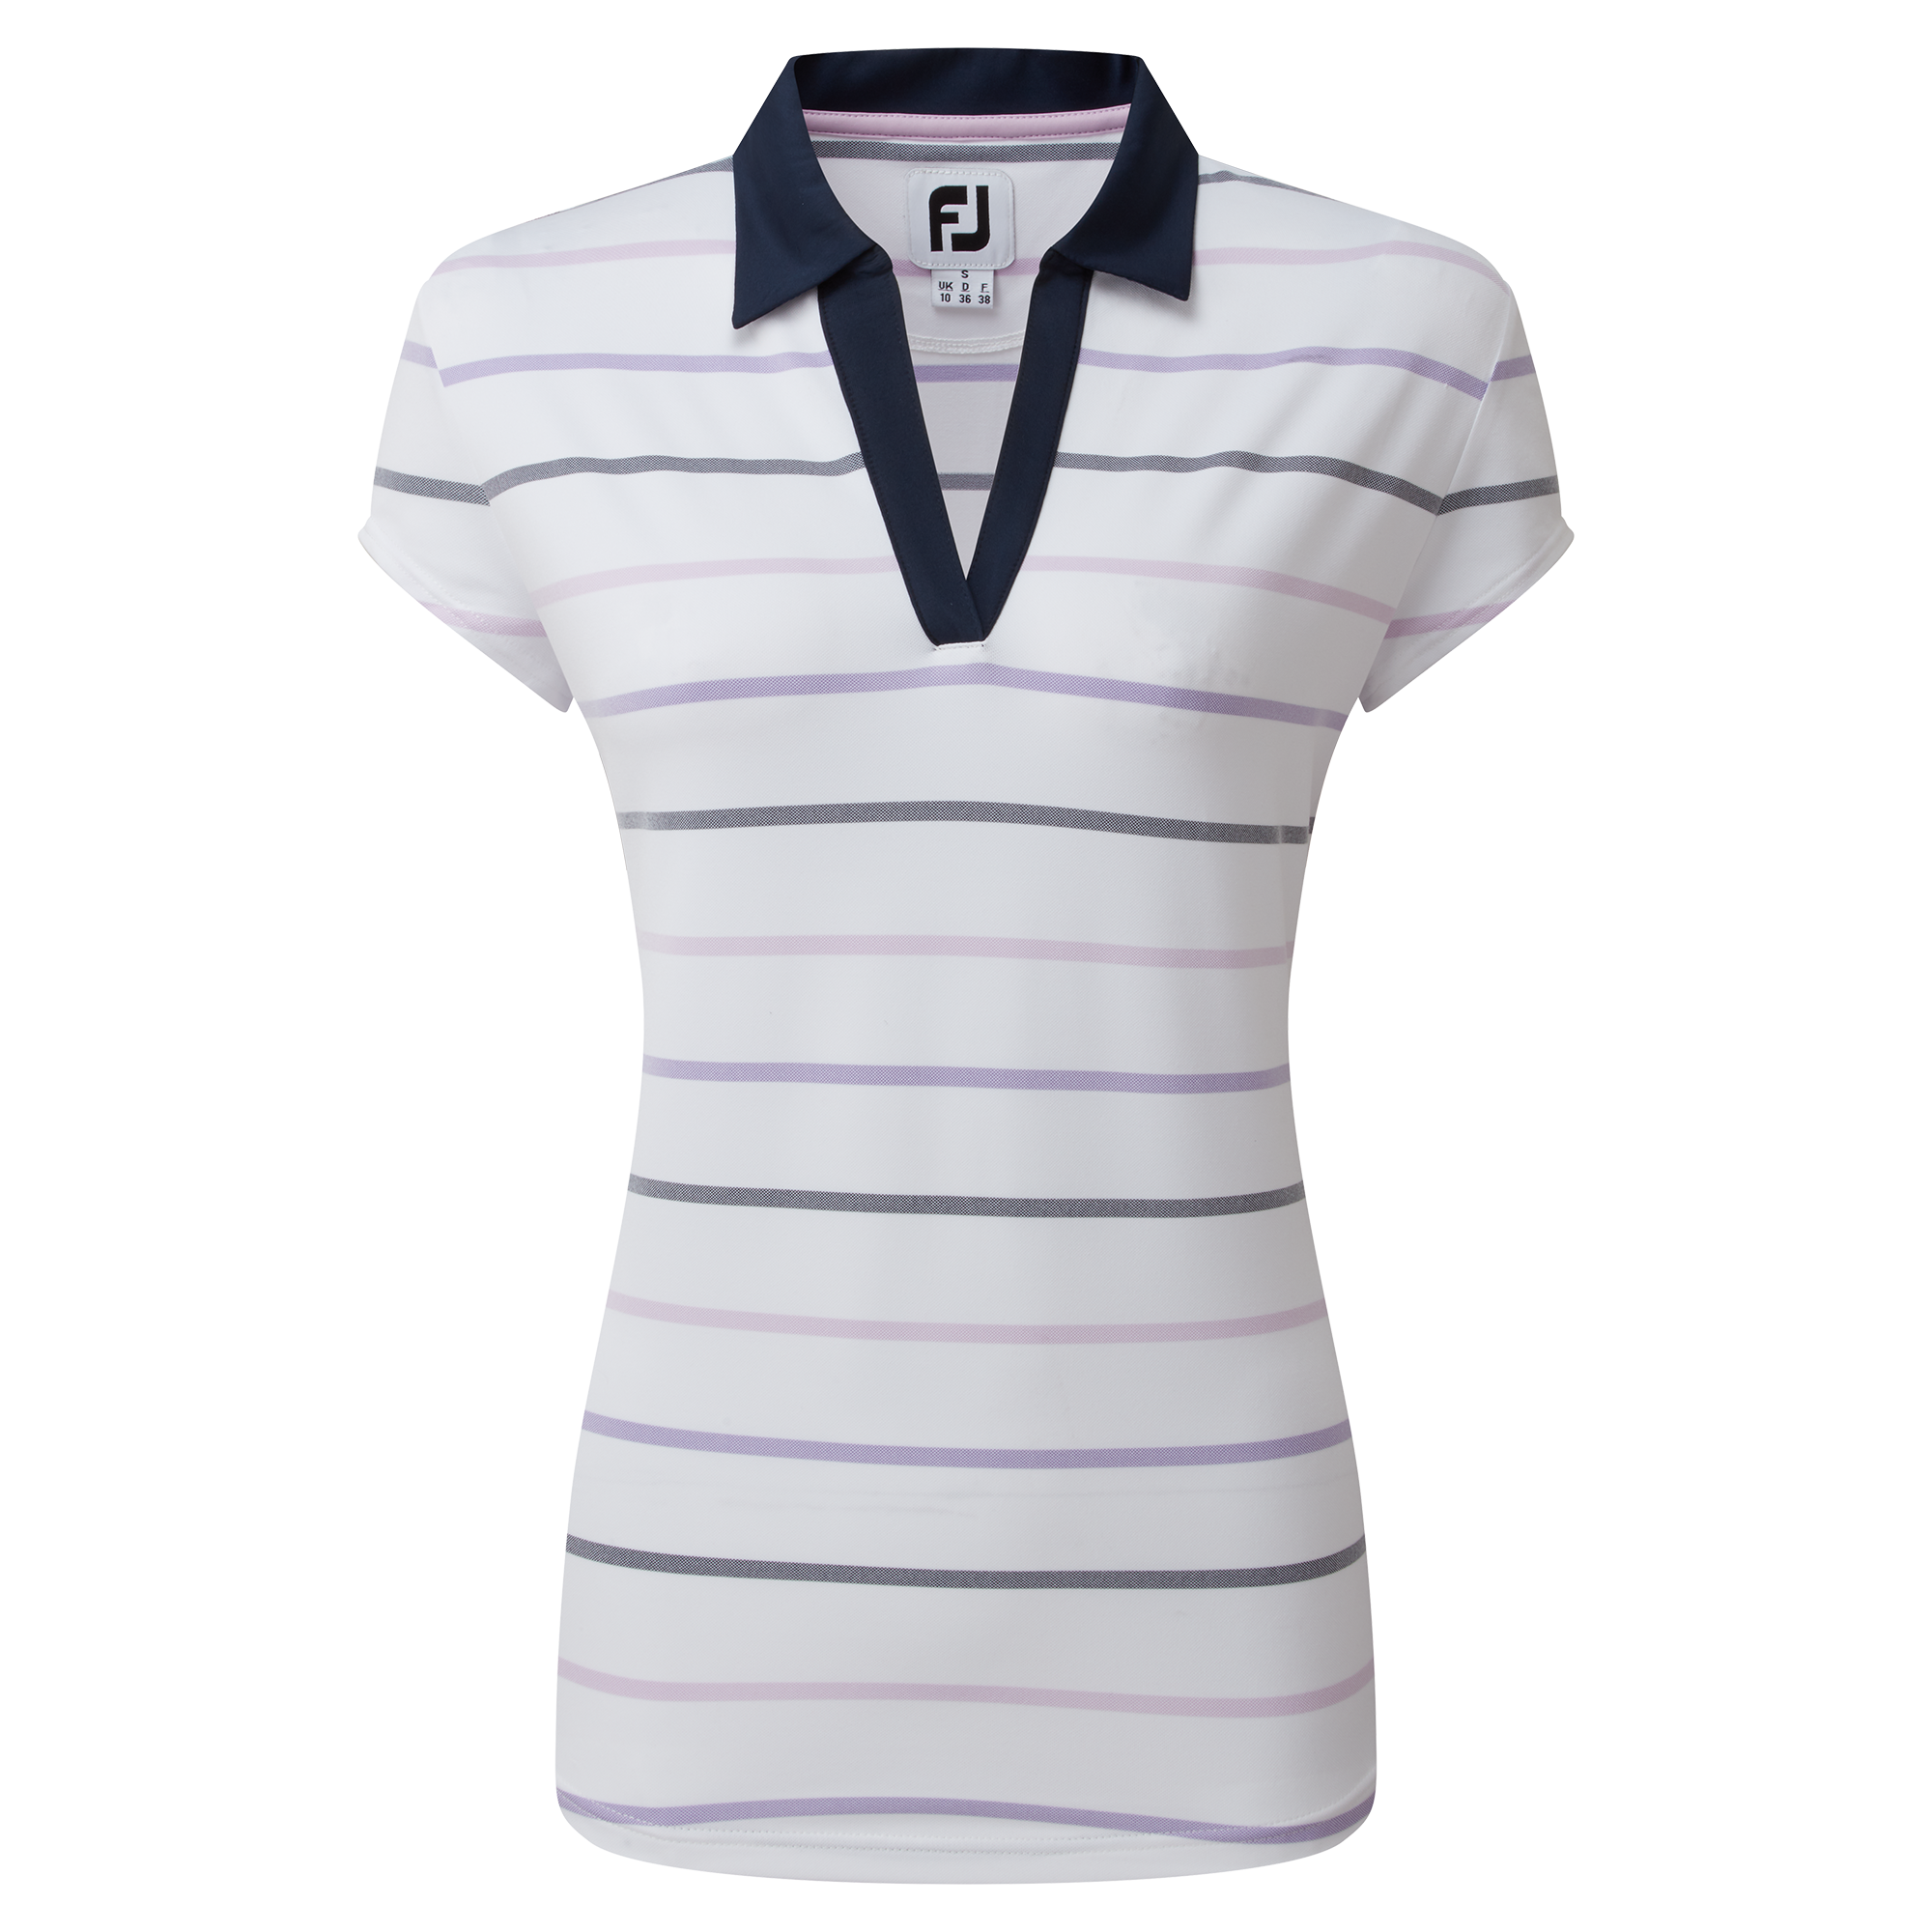 FootJoy Birdseye Stripe Smooth Jacquard dámské golfové triko, bílé, vel. S